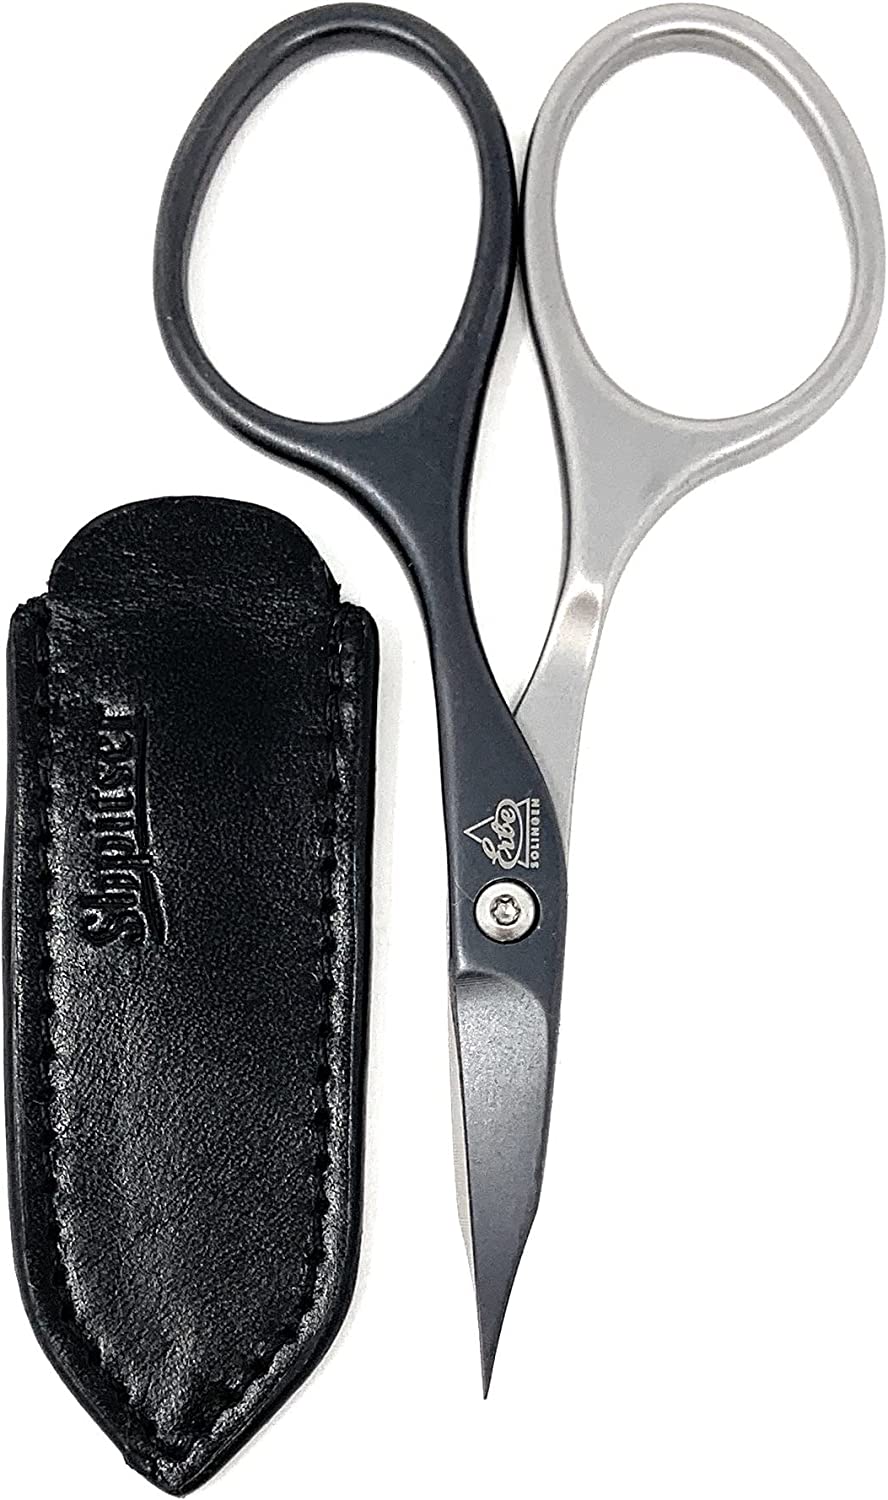 Heavy Duty Pedicure Scissors by Erbe. Made in Solingen Germany